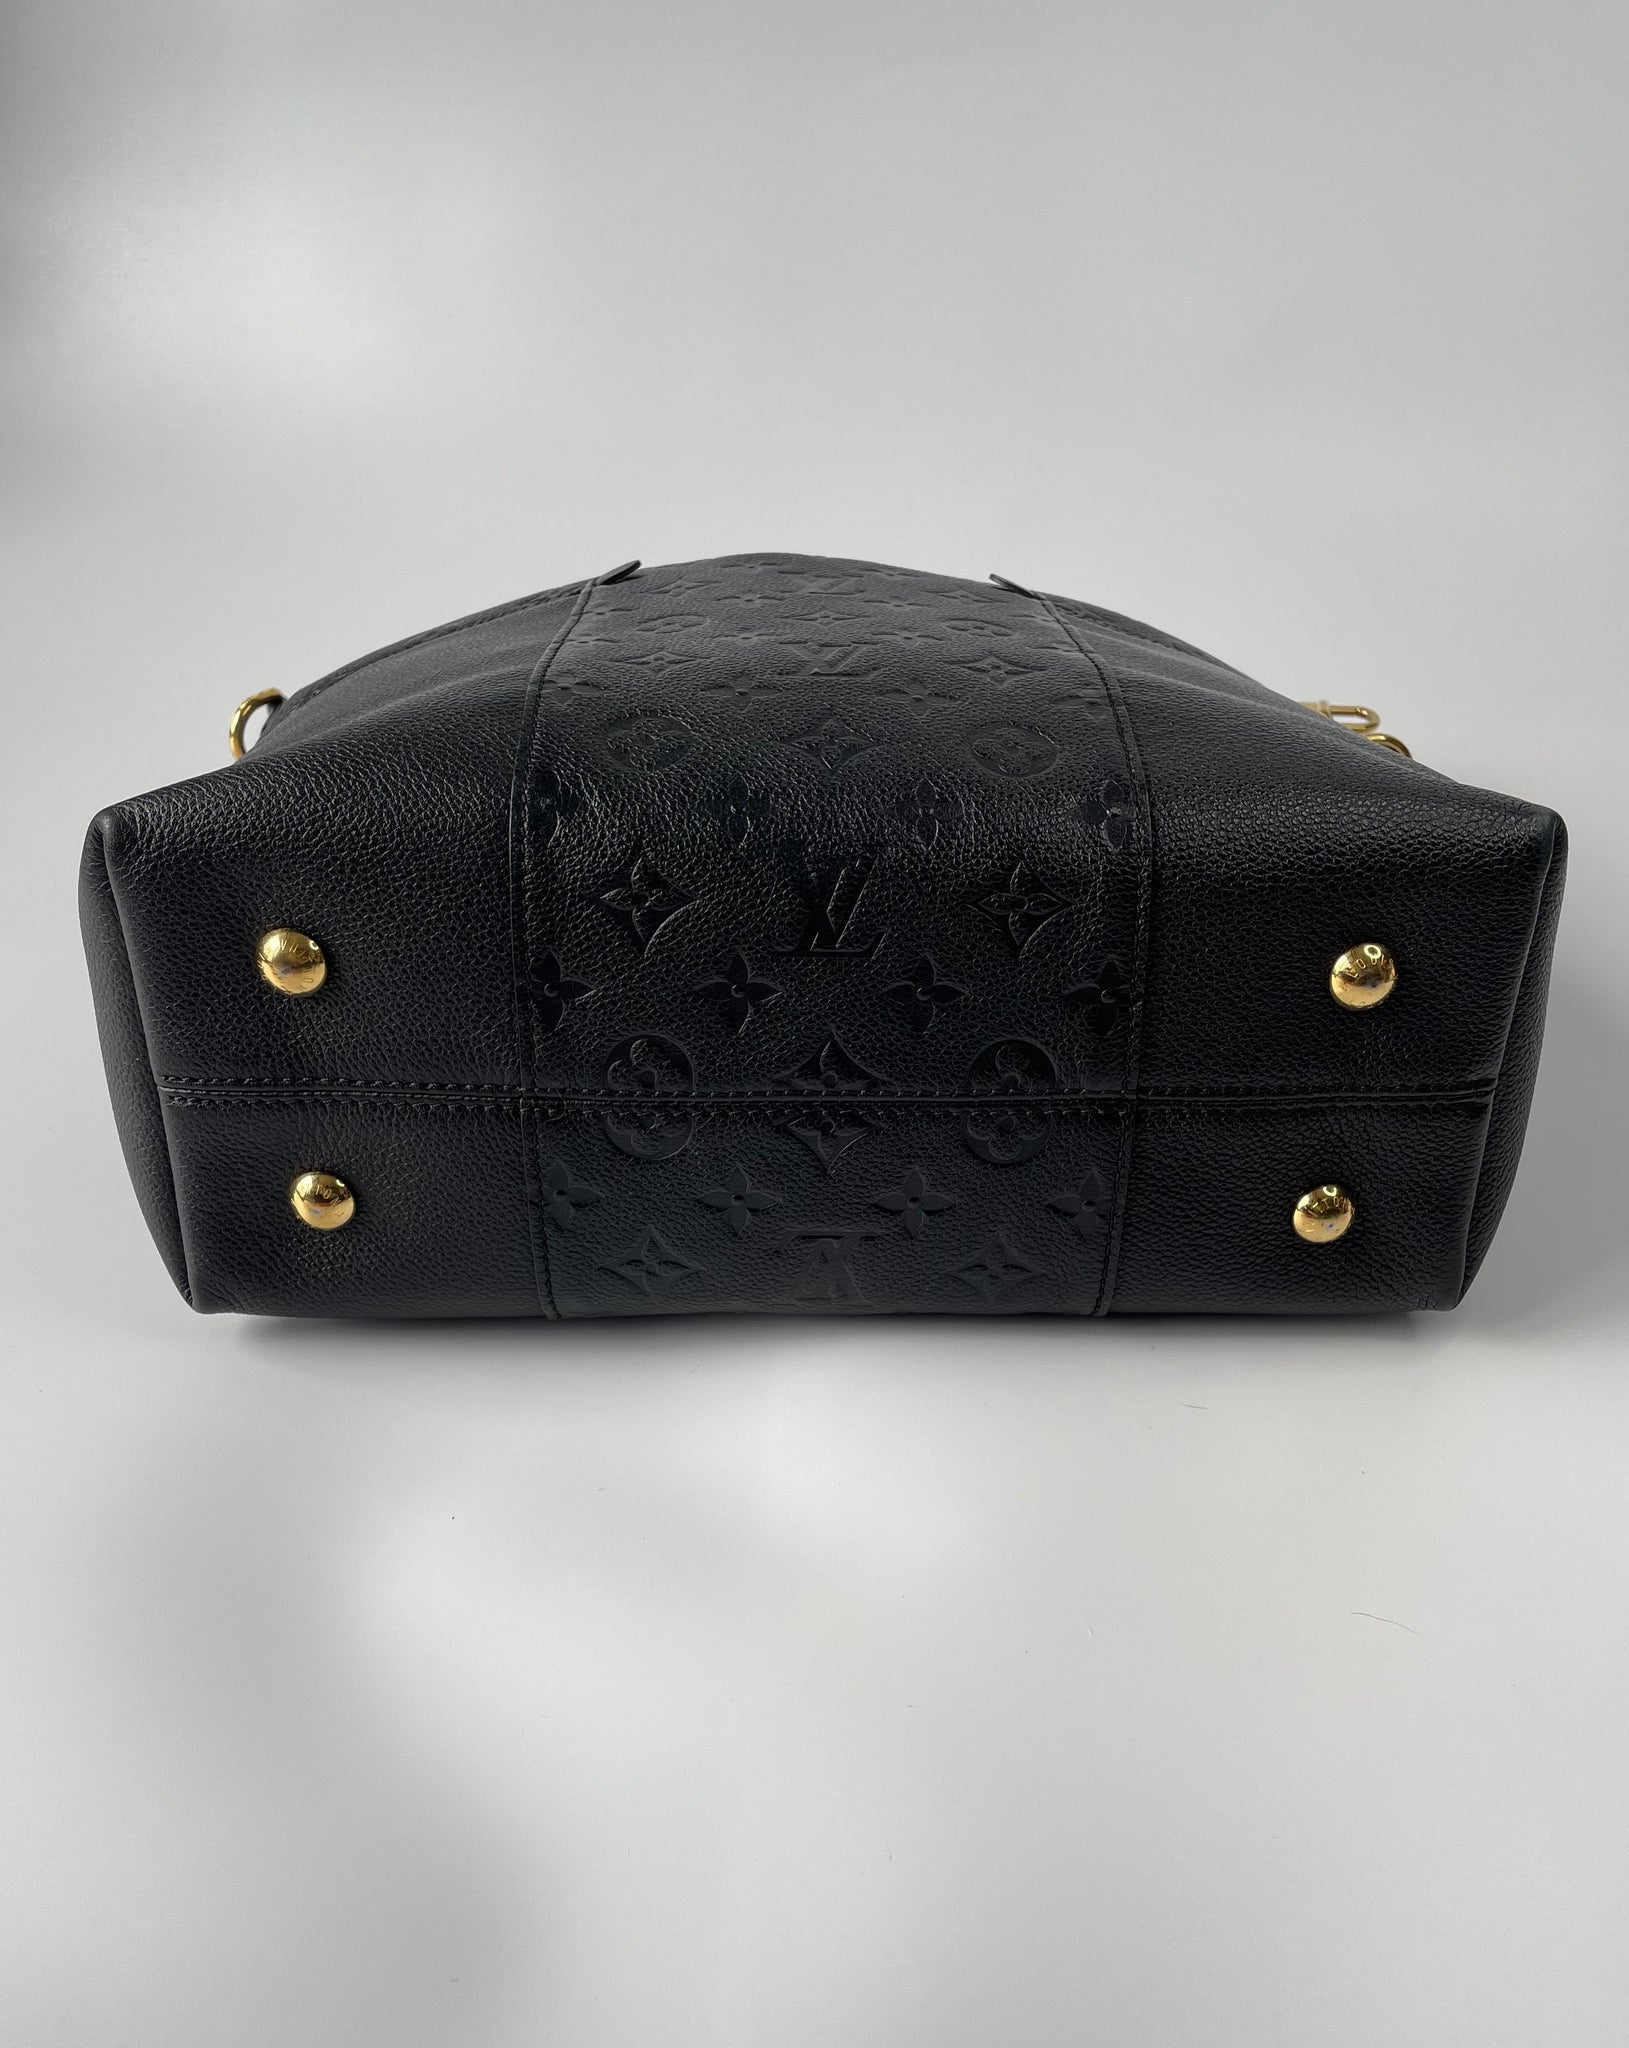 Louis Vuitton Black Leather Monogram Empreinte Melie Noir 2way